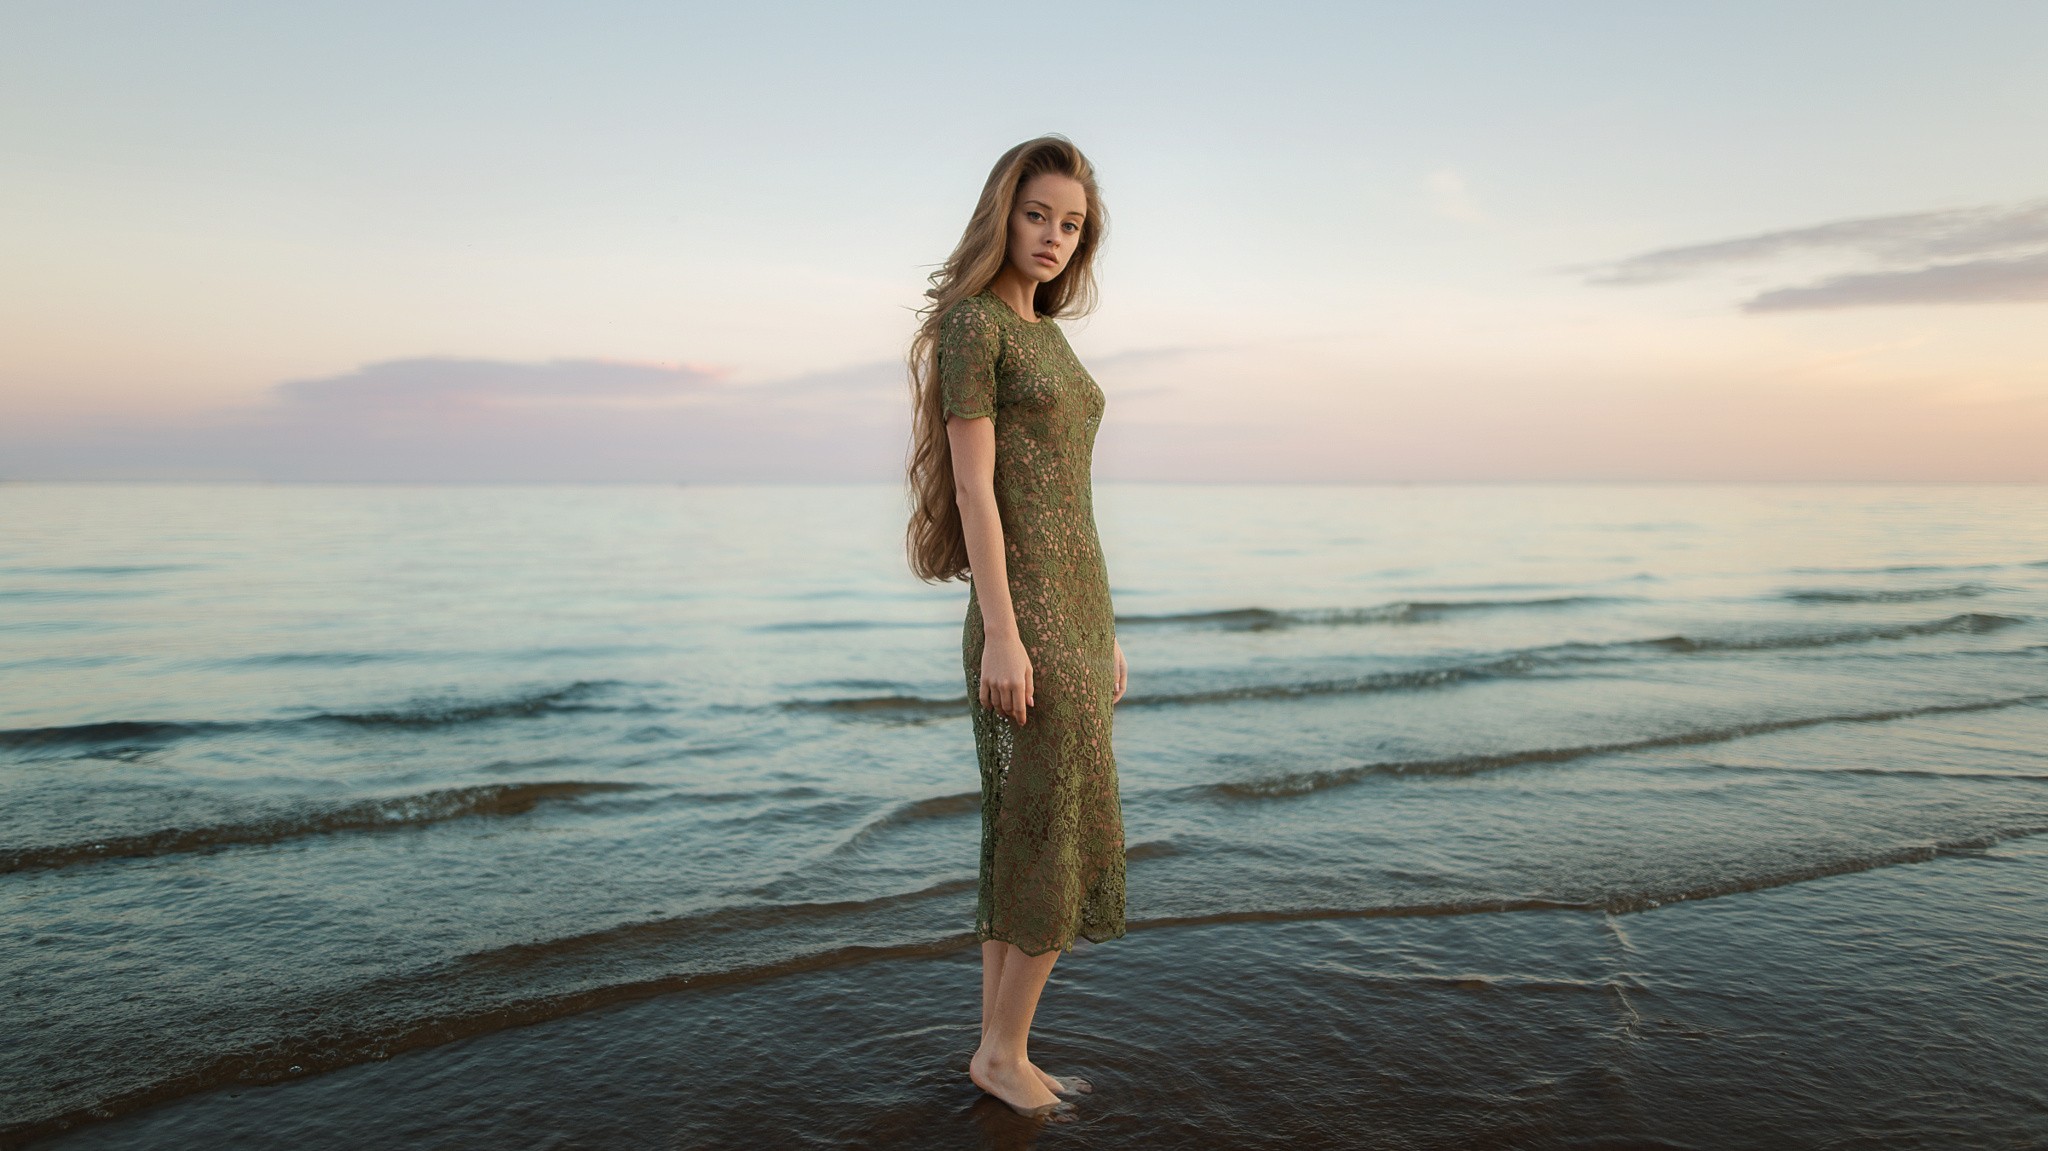 Women Brunette Long Hair Dress Barefoot Sea Waves Women Outdoors Standing Knit Fabric 2048x1151